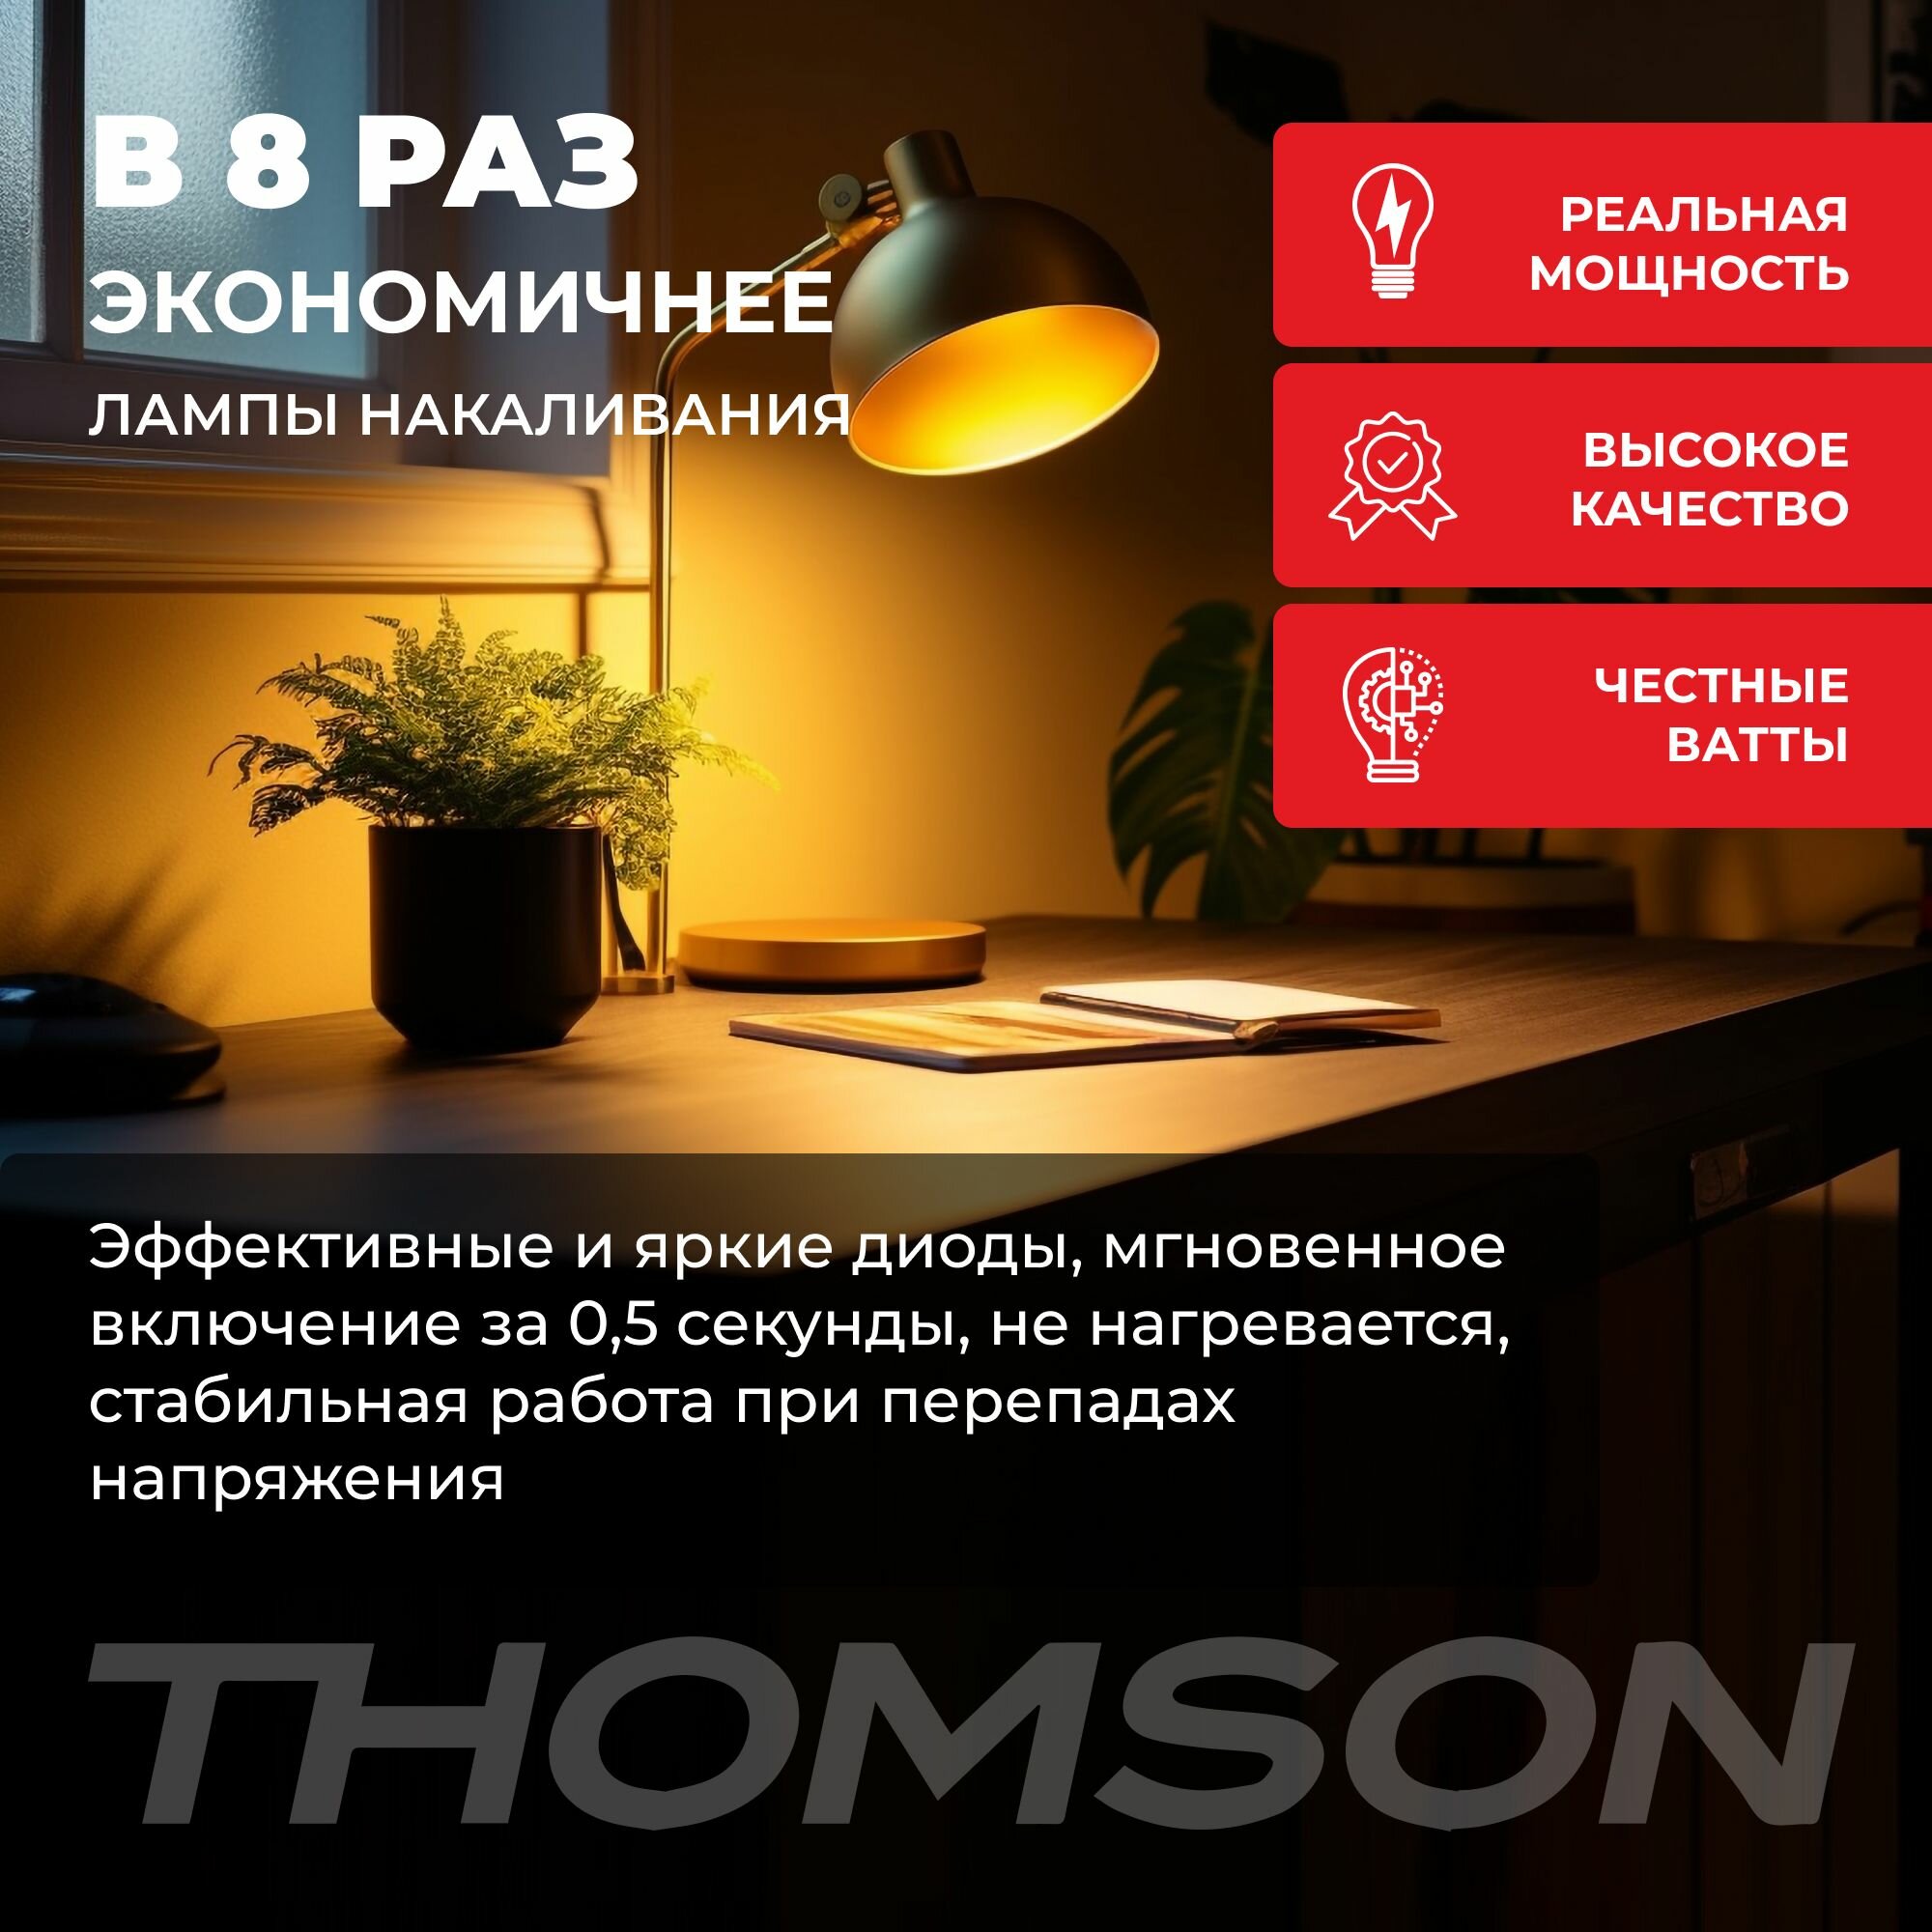 Лампочка Thomson TH-B2003 9 Вт, E27, 3000К, груша, теплый белый свет